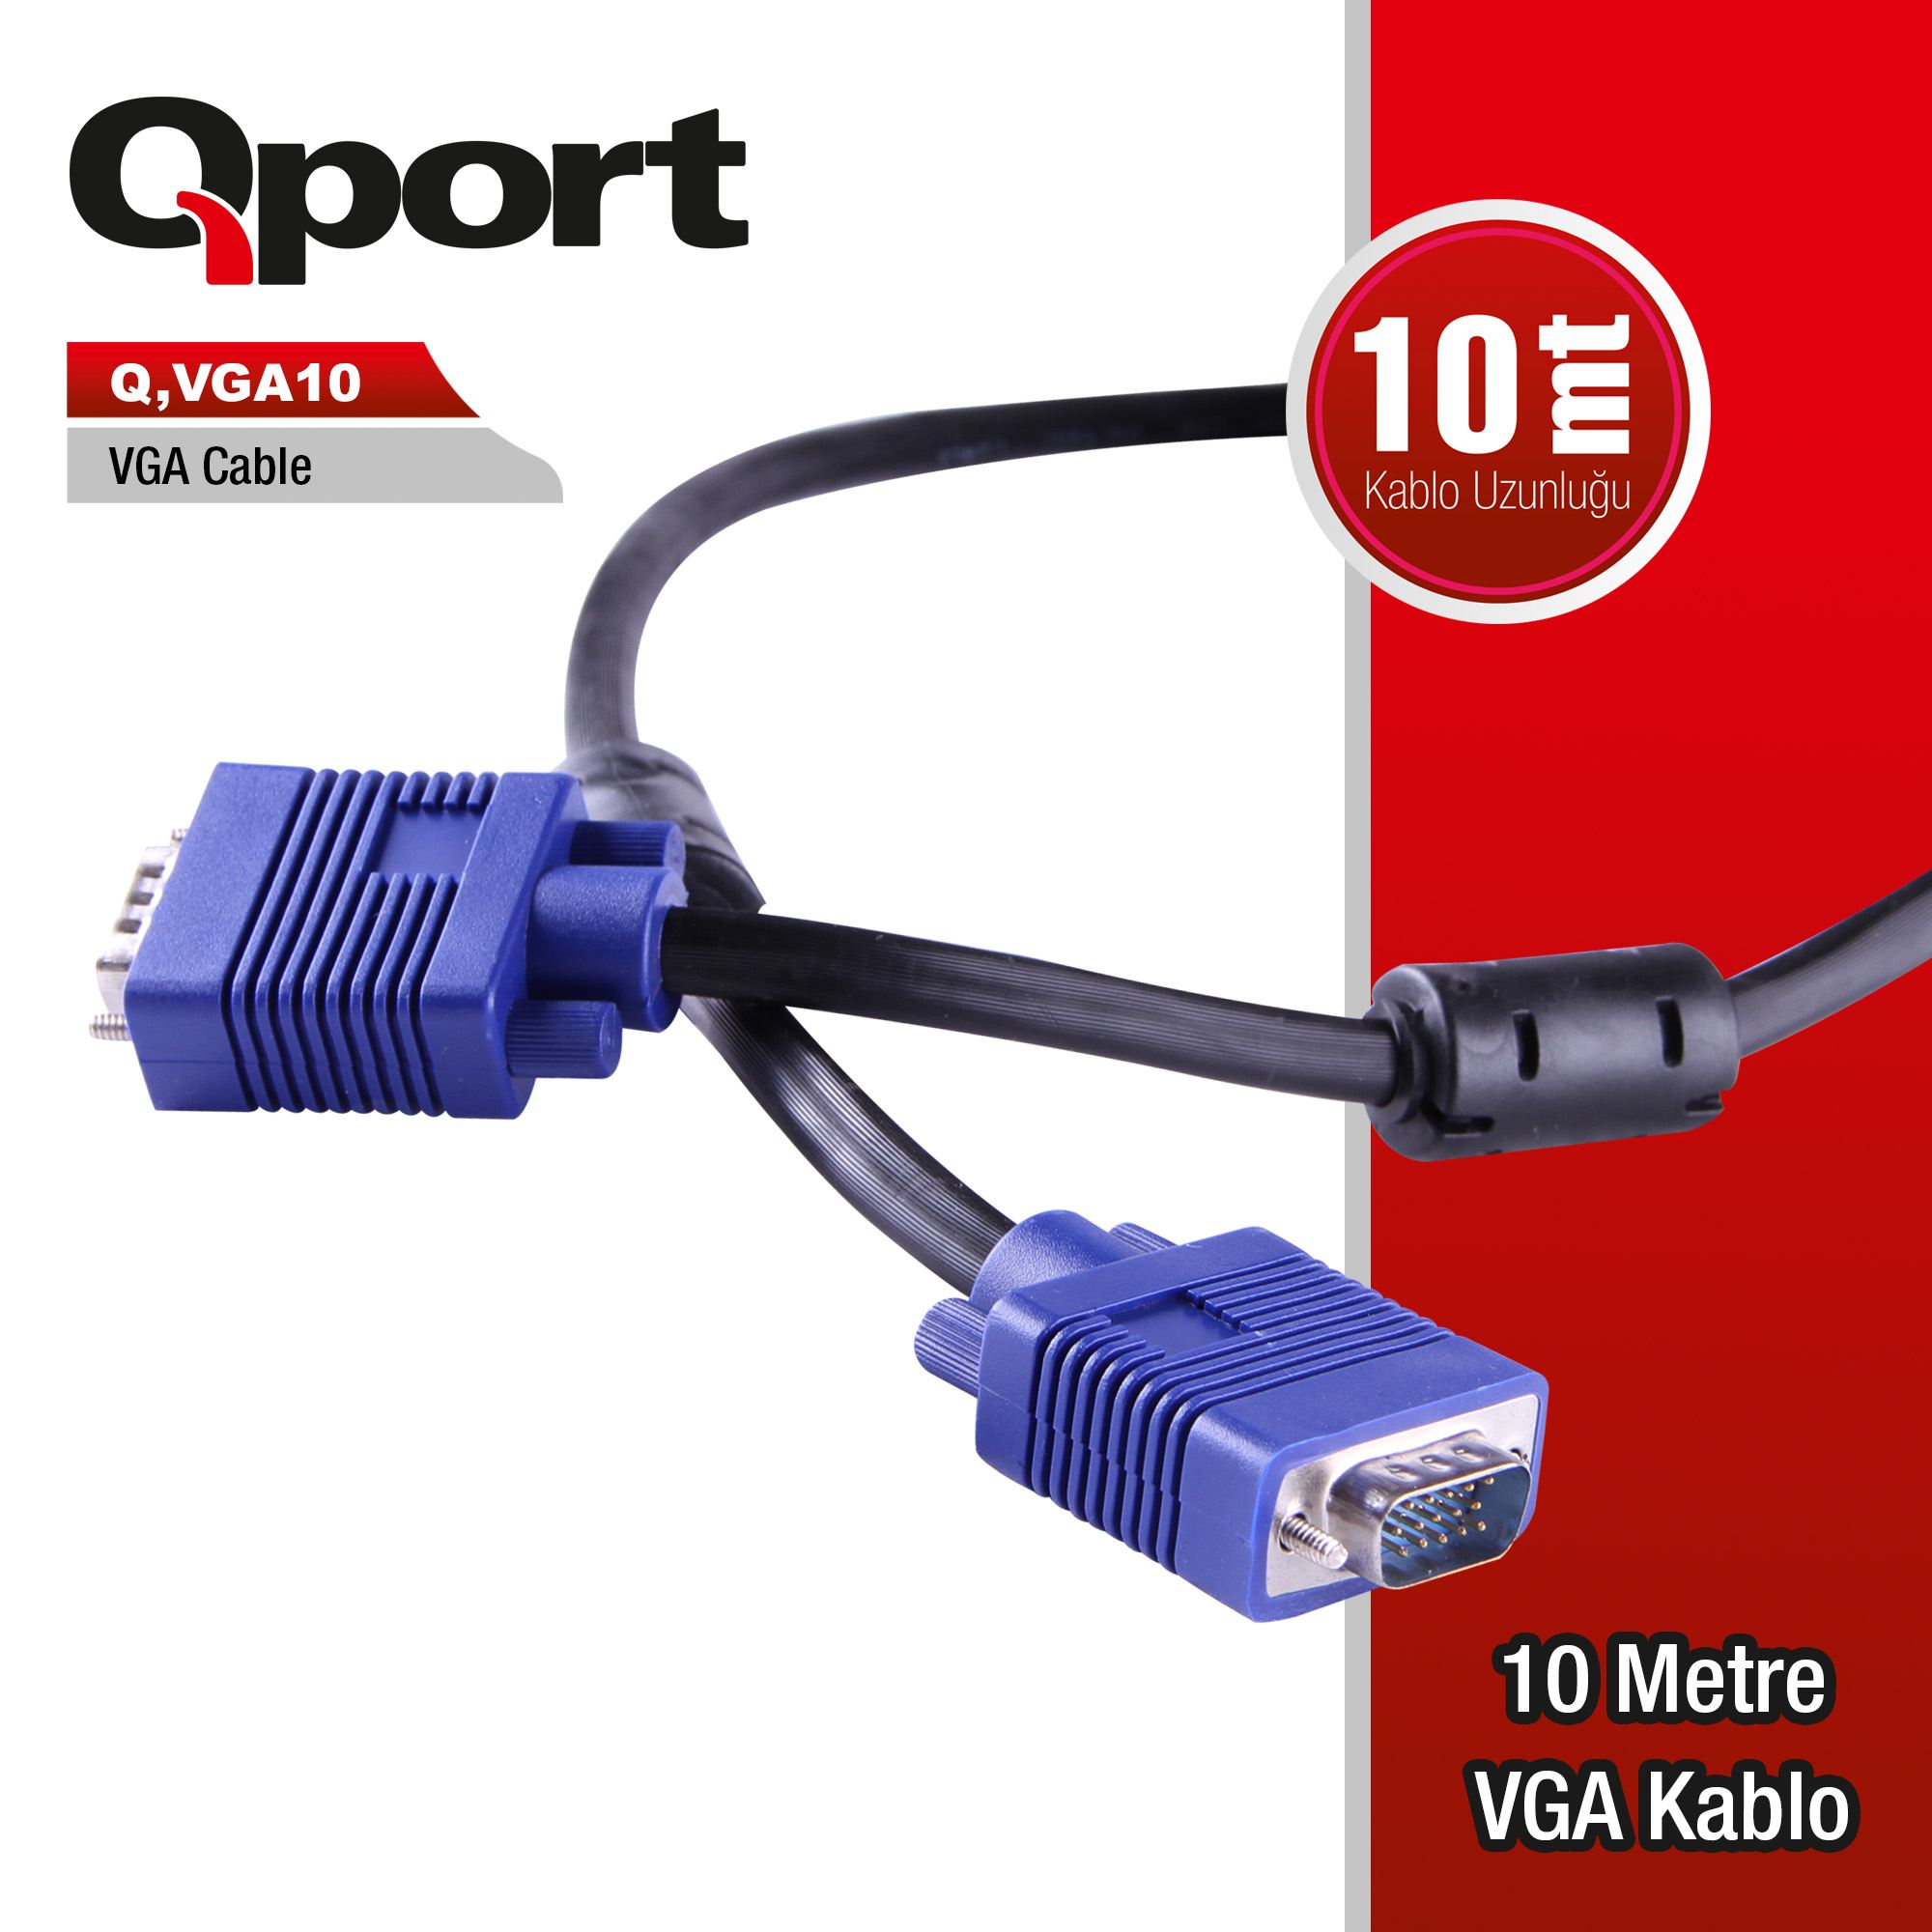 QPORT Q-VGA10 10MT VGA KABLO